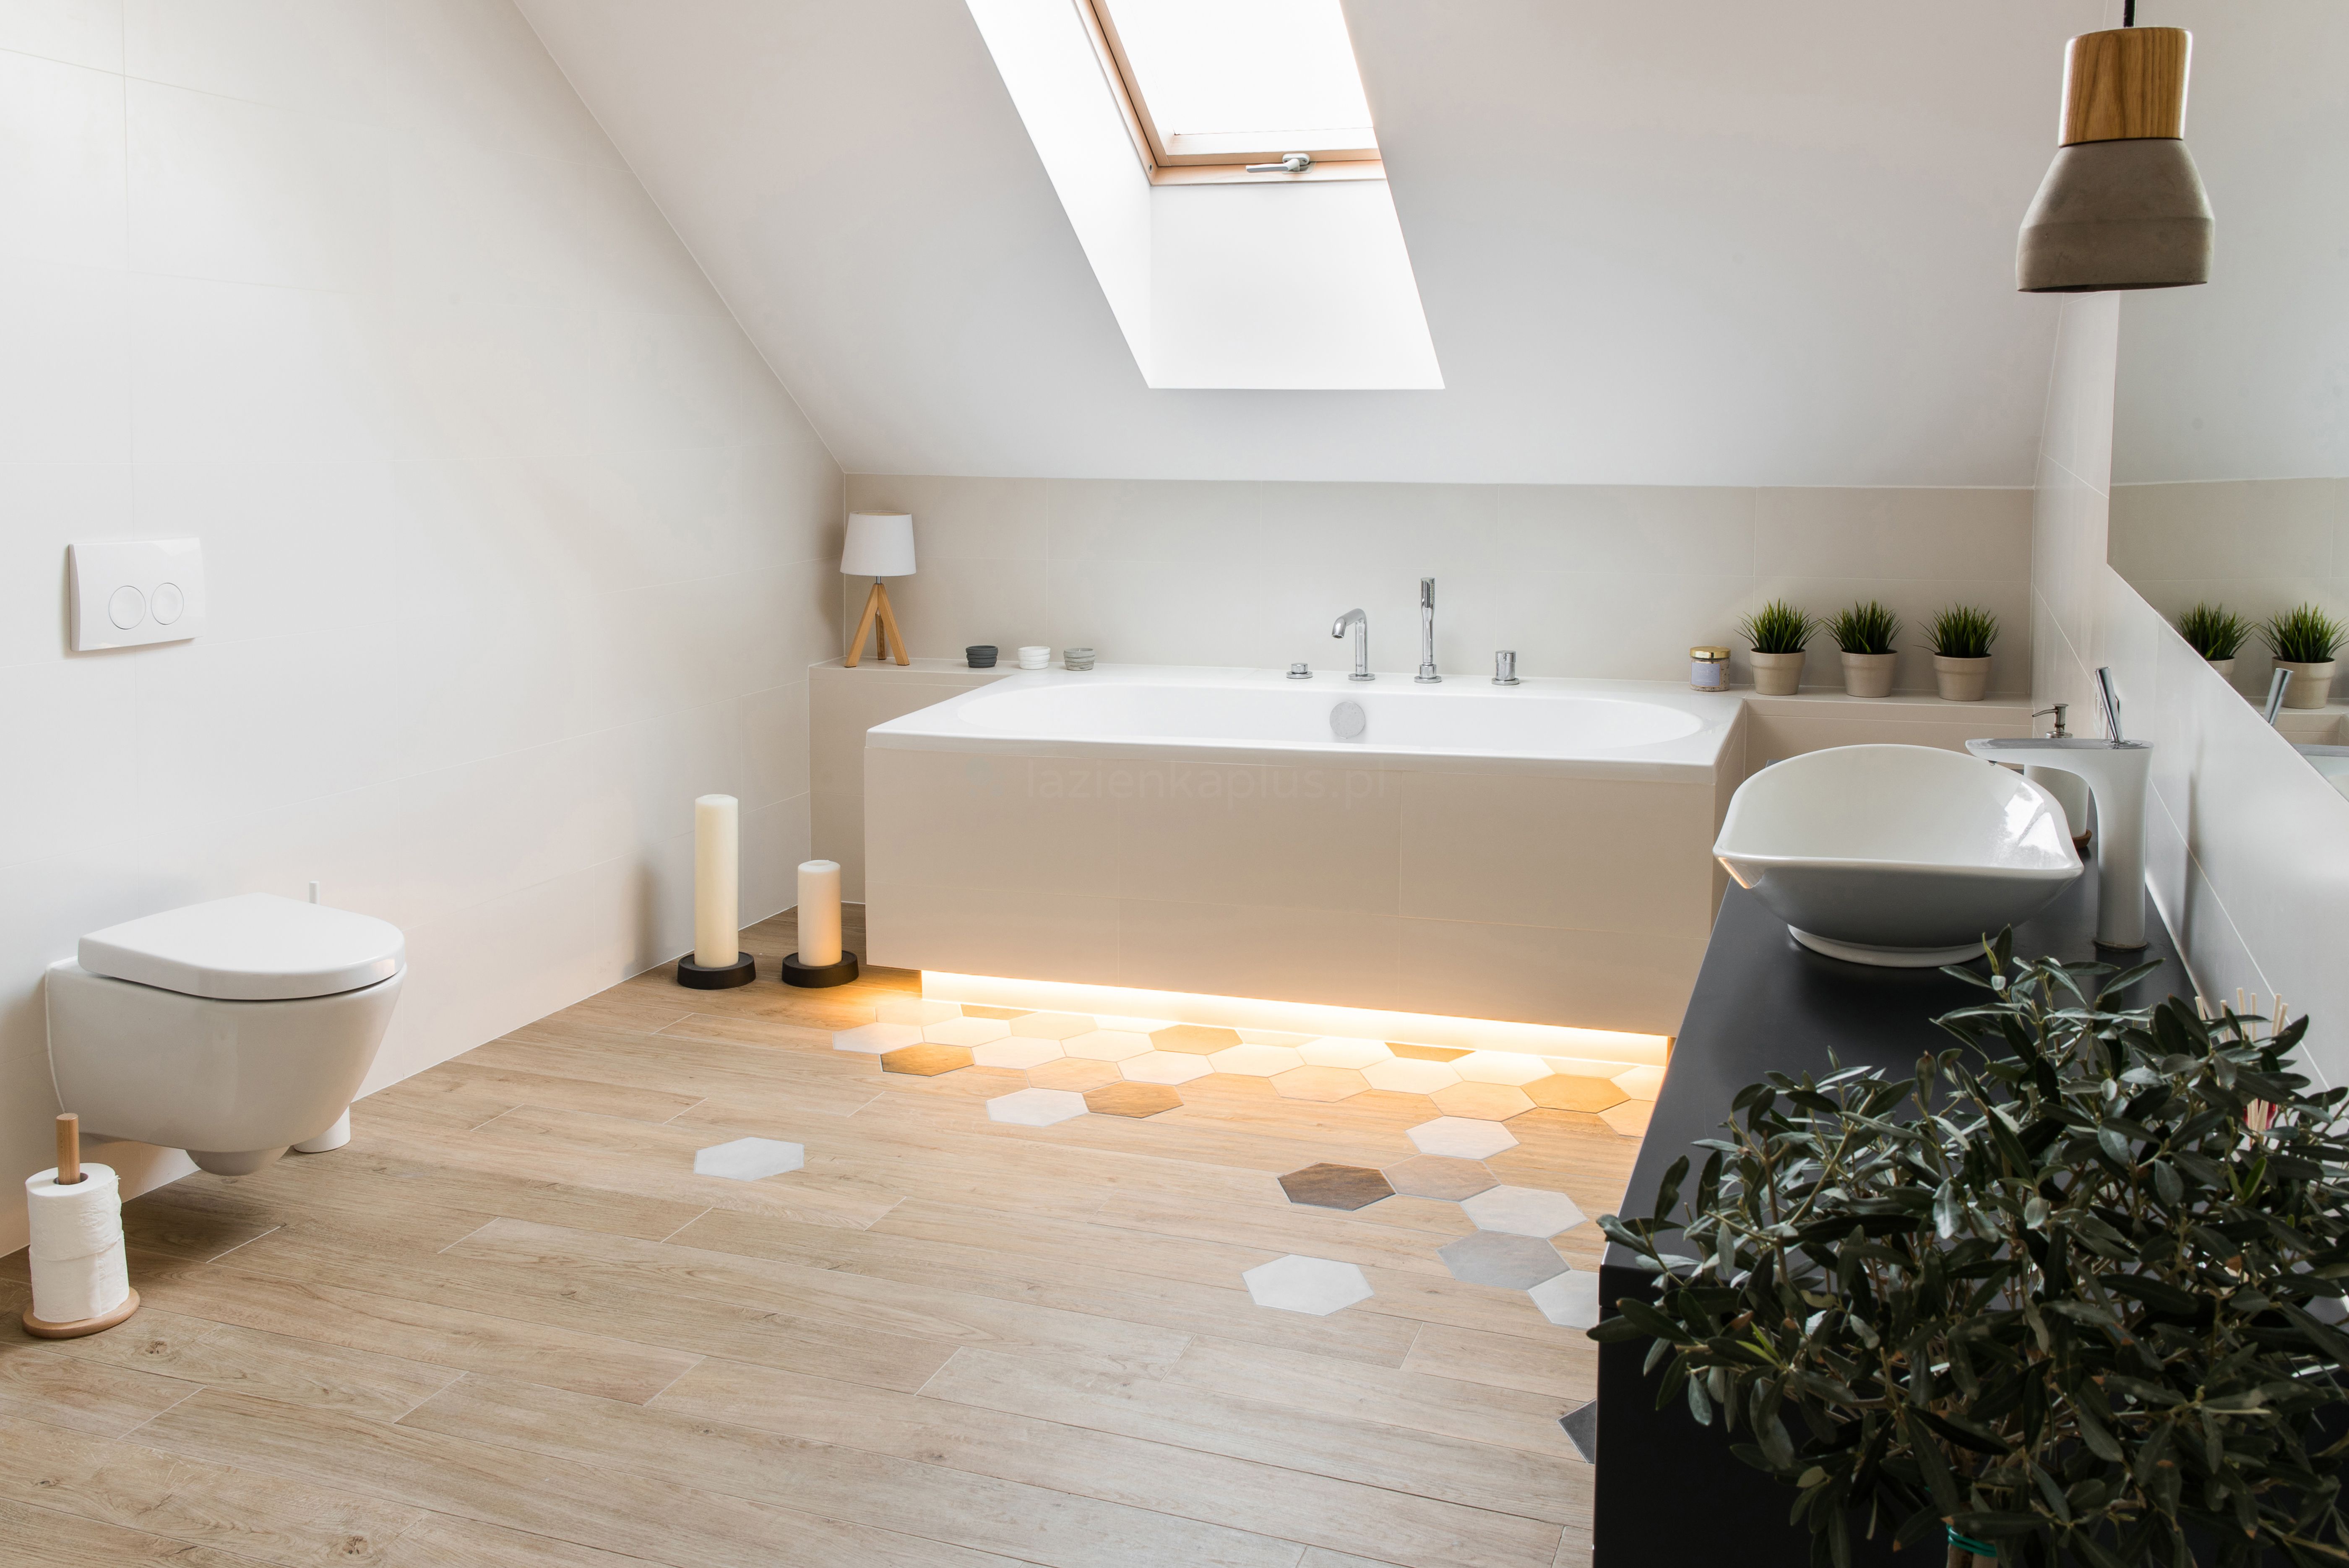 Biała rozświetlona łazienka z drewnem